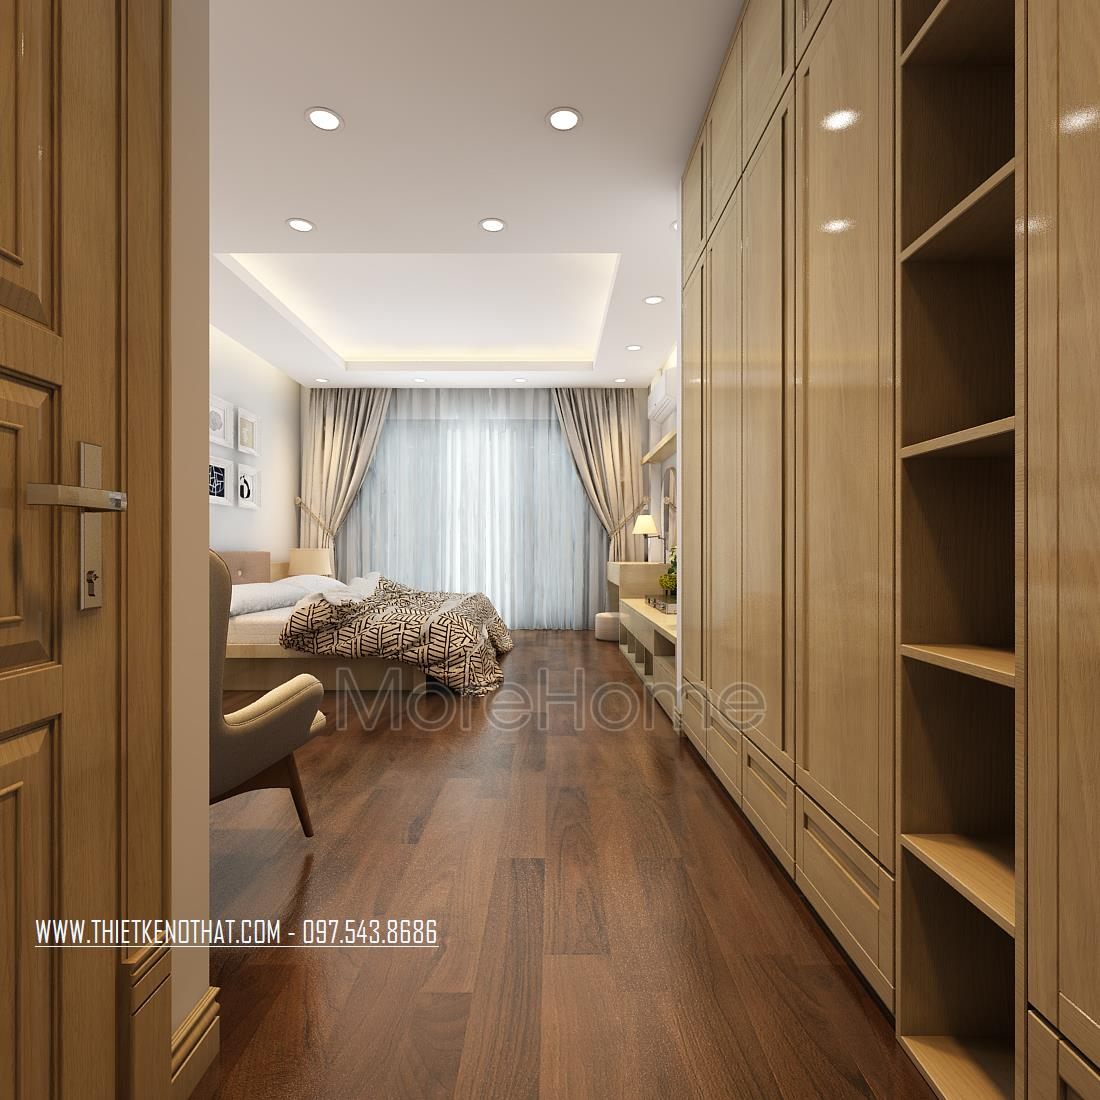 Thiết kế nội thất phòng ngủ nhà phố Long Biên